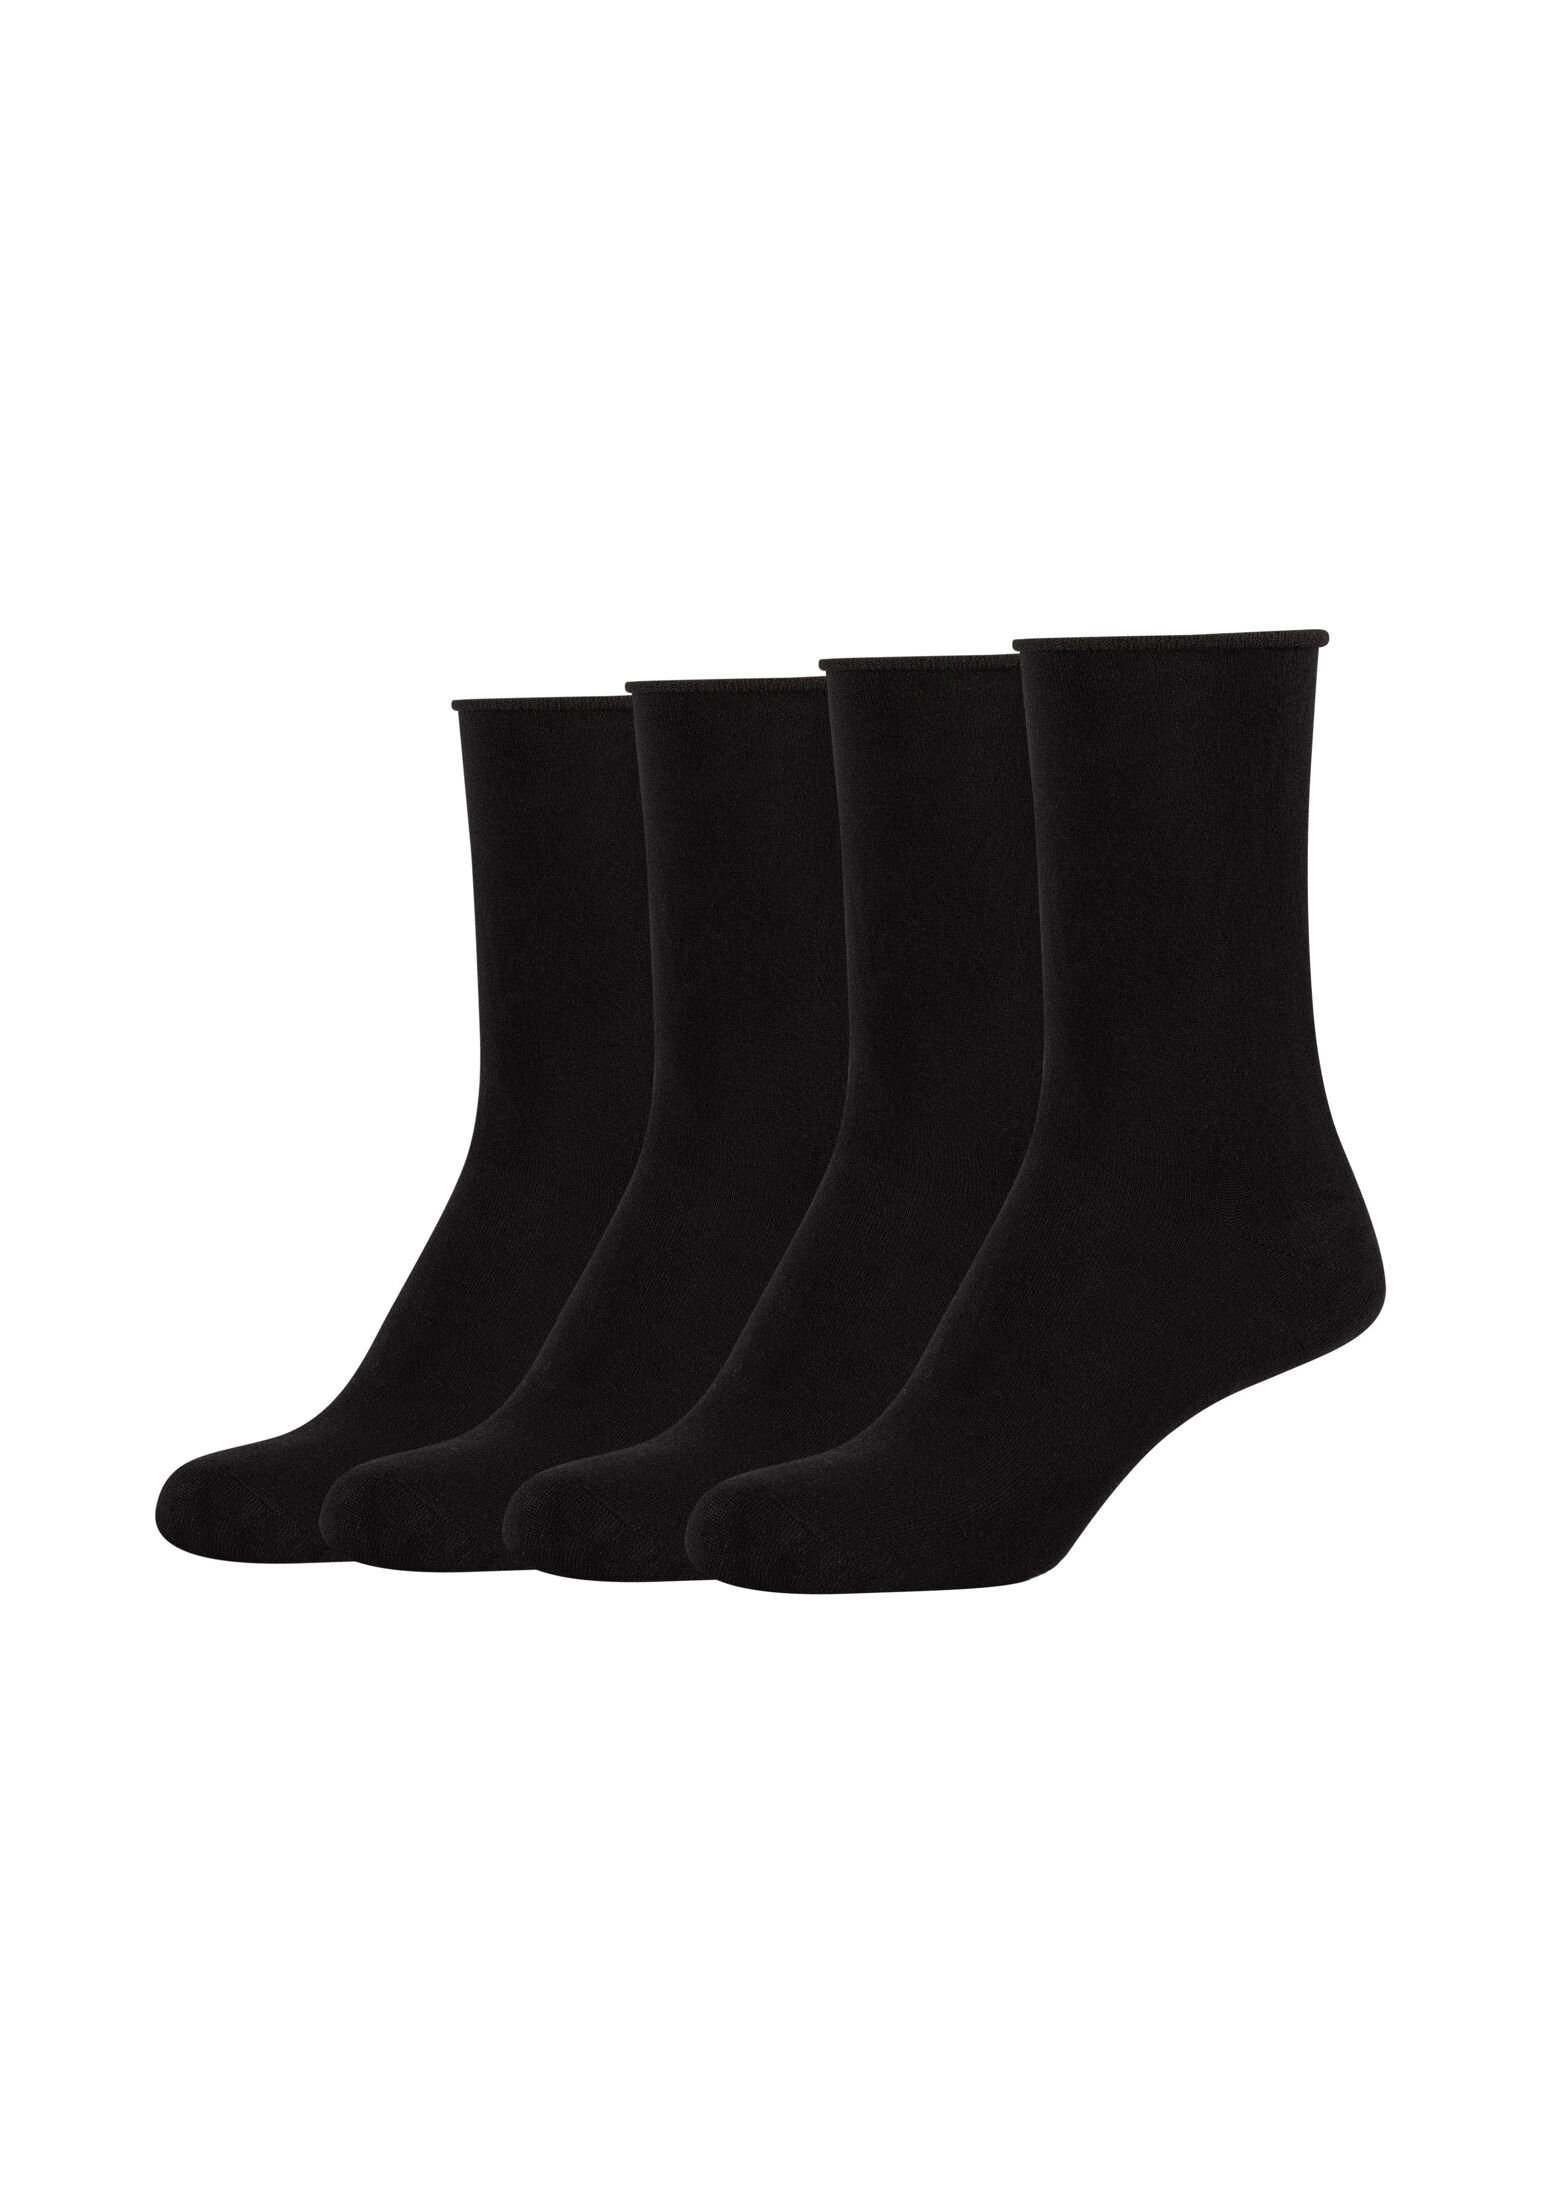 s.Oliver Socken Socken 4er black Pack